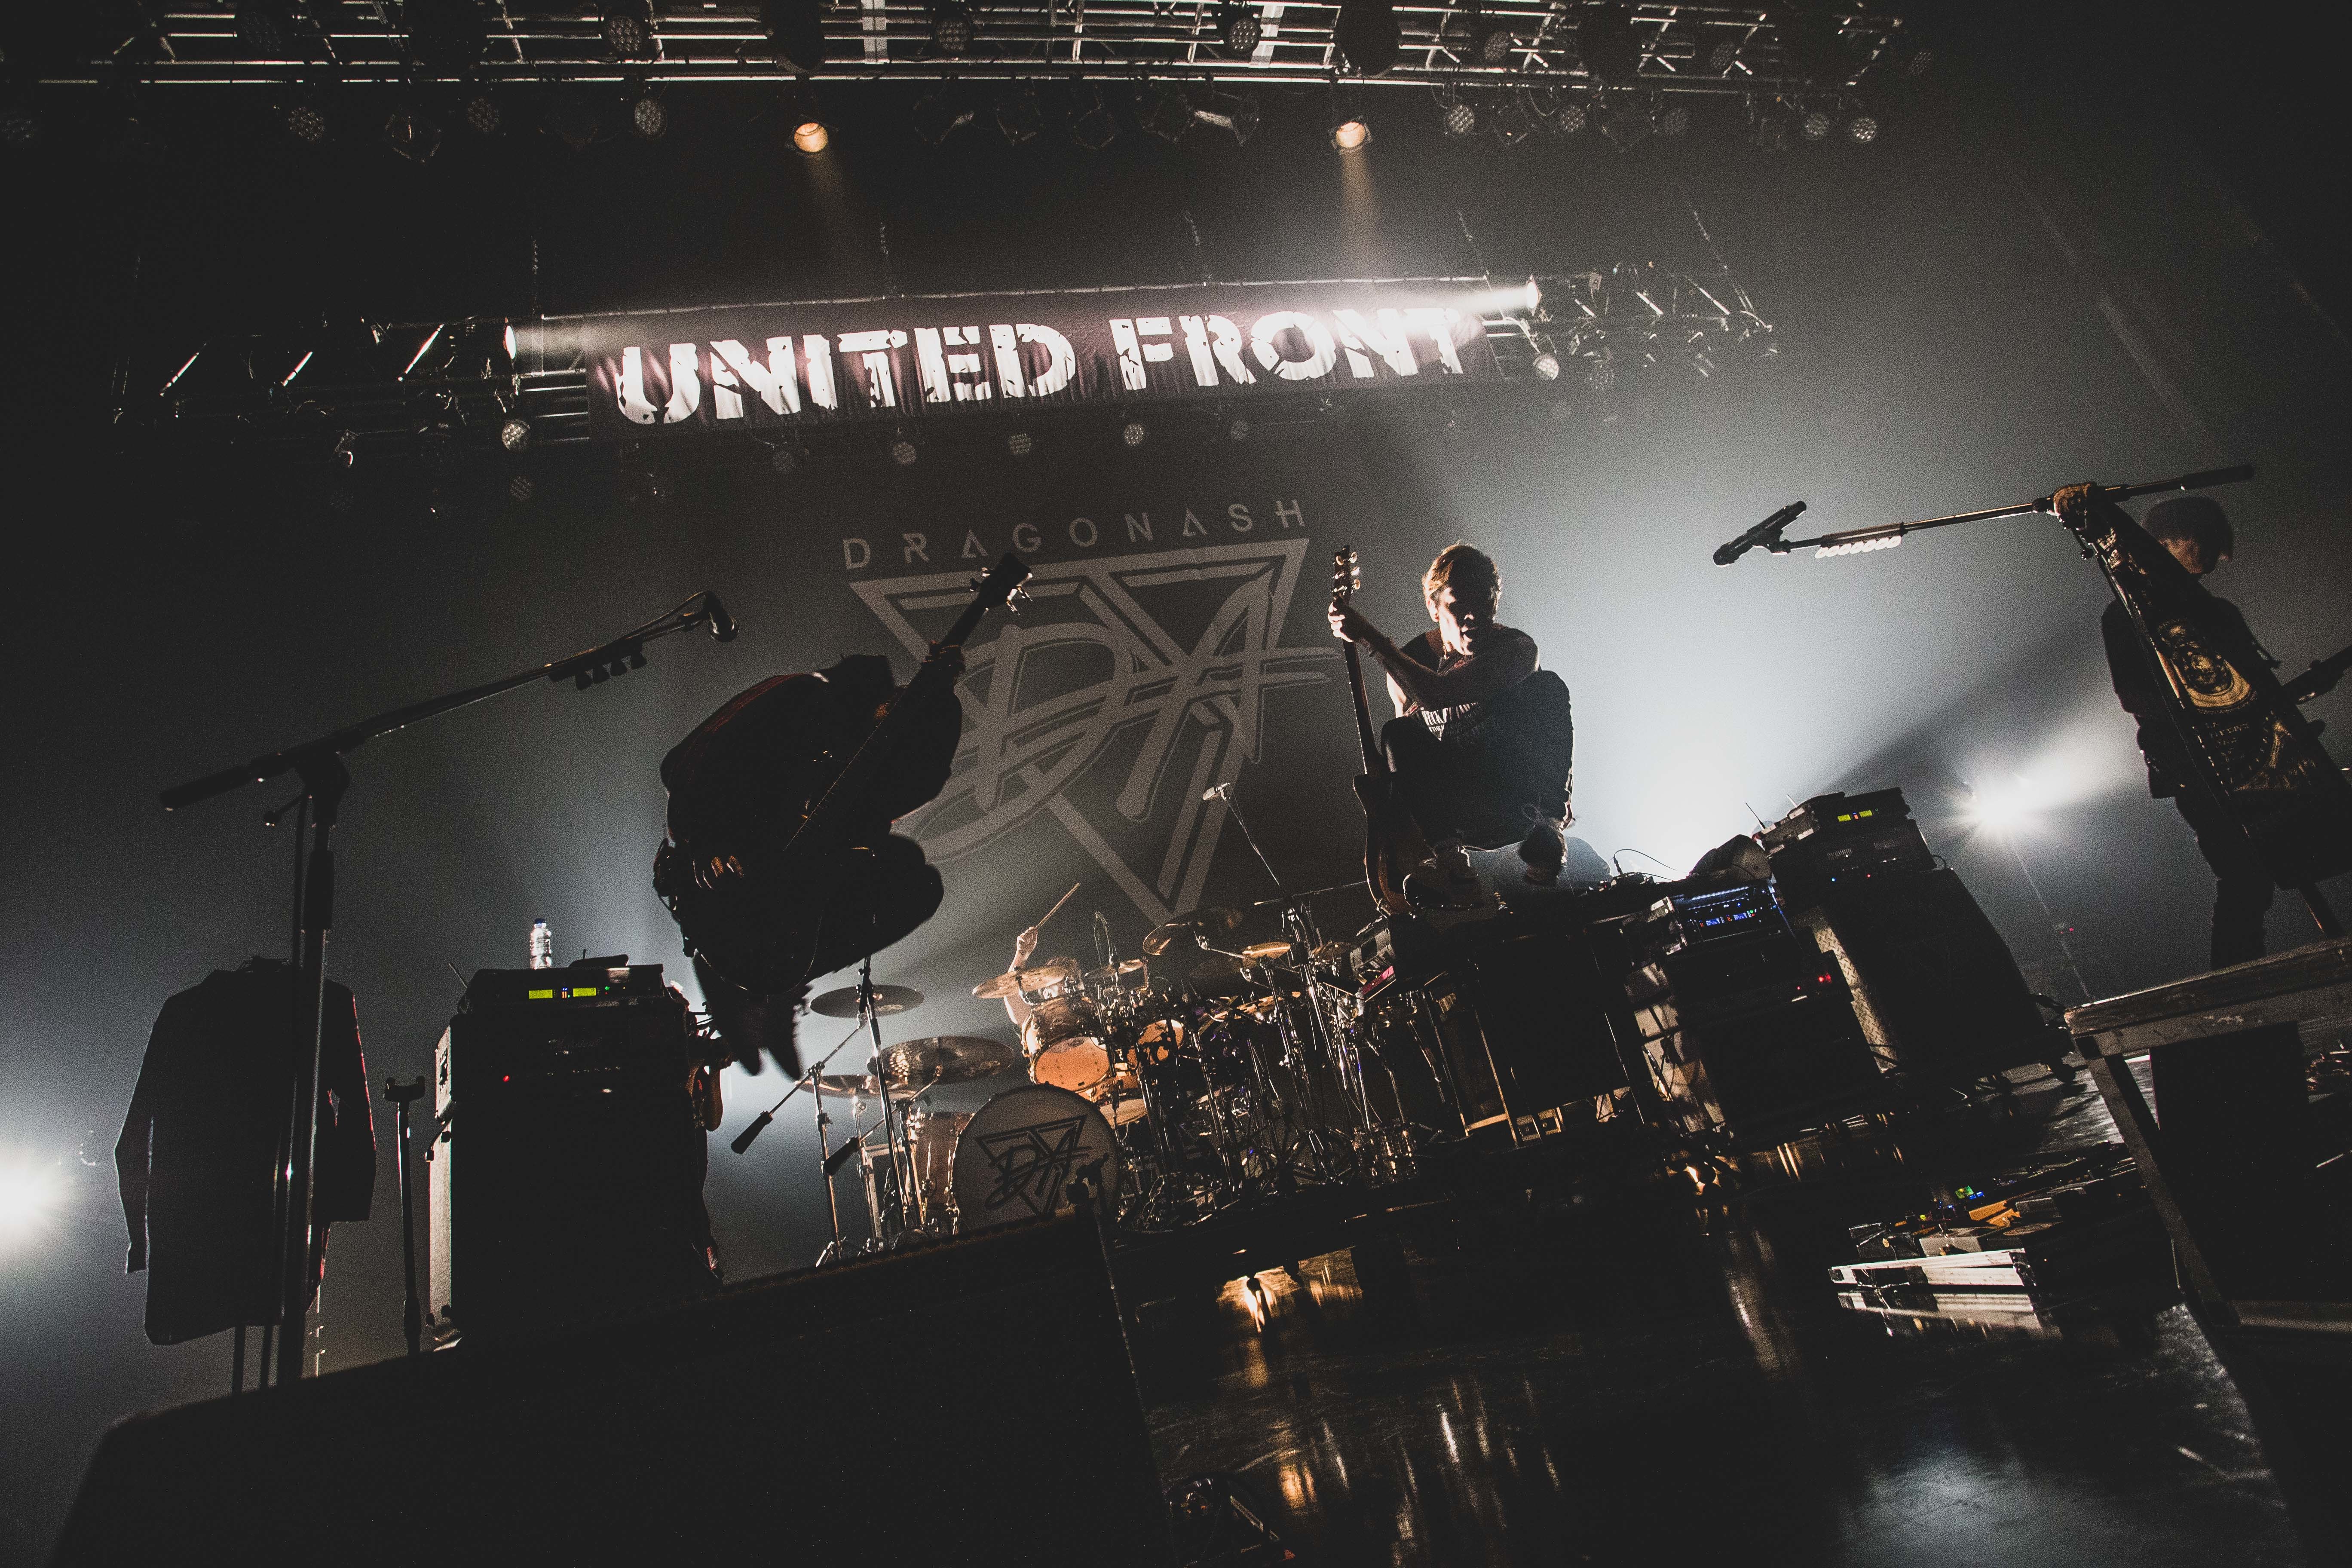 Dragon Ash、MONOEYSとの対バンライブ 『UNITED FRONT 2020』東京公演